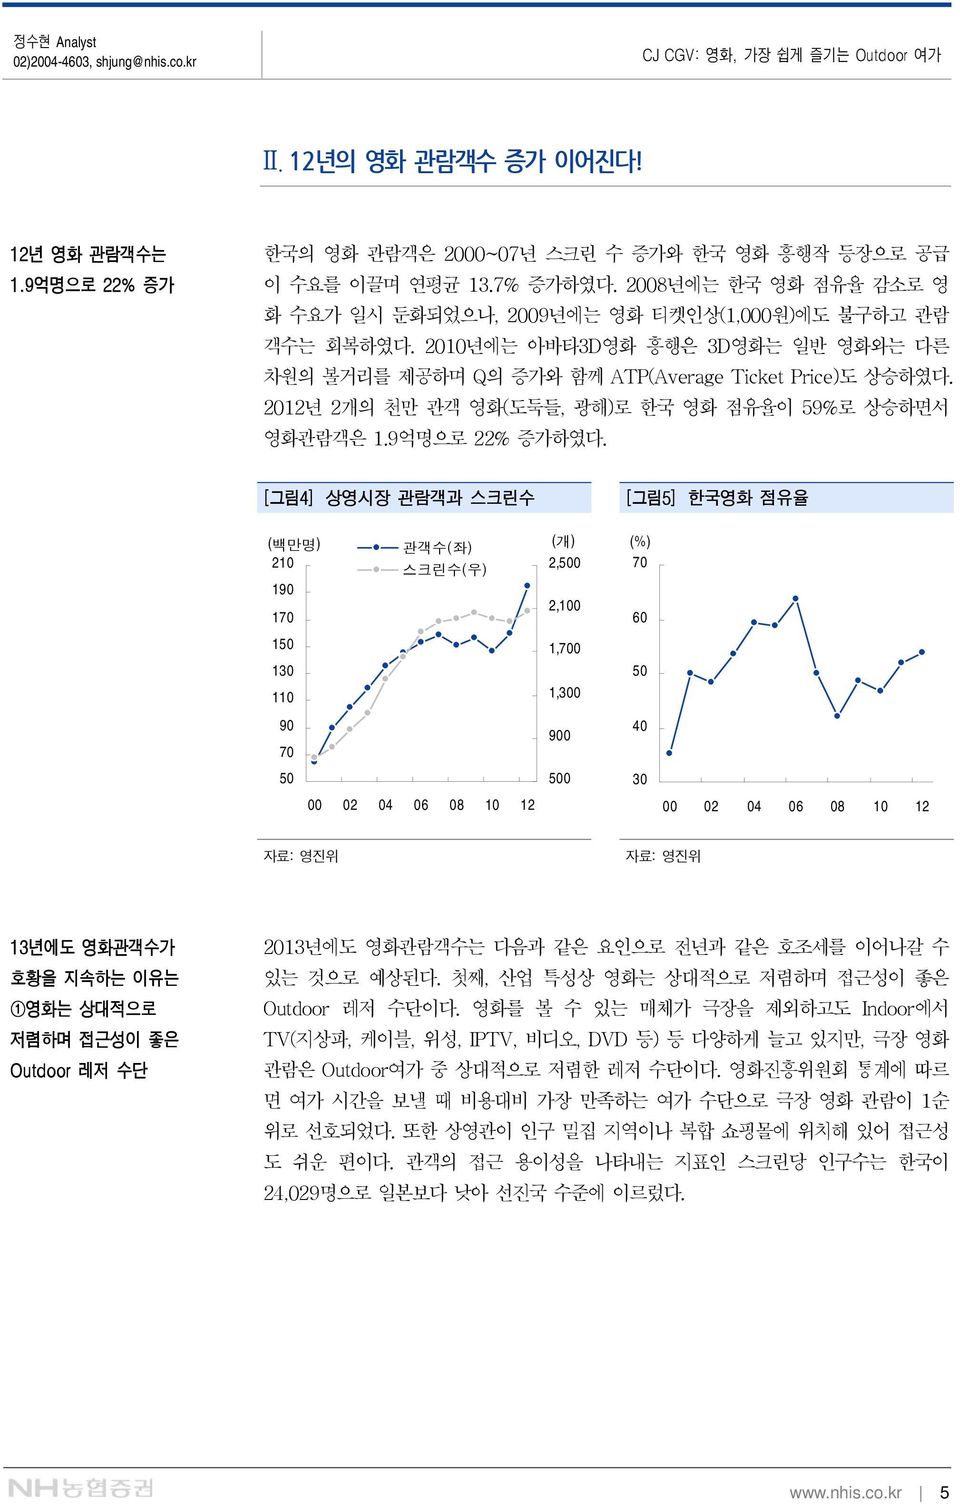 212년 2개의 천만 관객 영화(도둑들, 광해)로 한국 영화 점유율이 59%로 상승하면서 영화관람객은 1.9억명으로 22% 증가하였다.